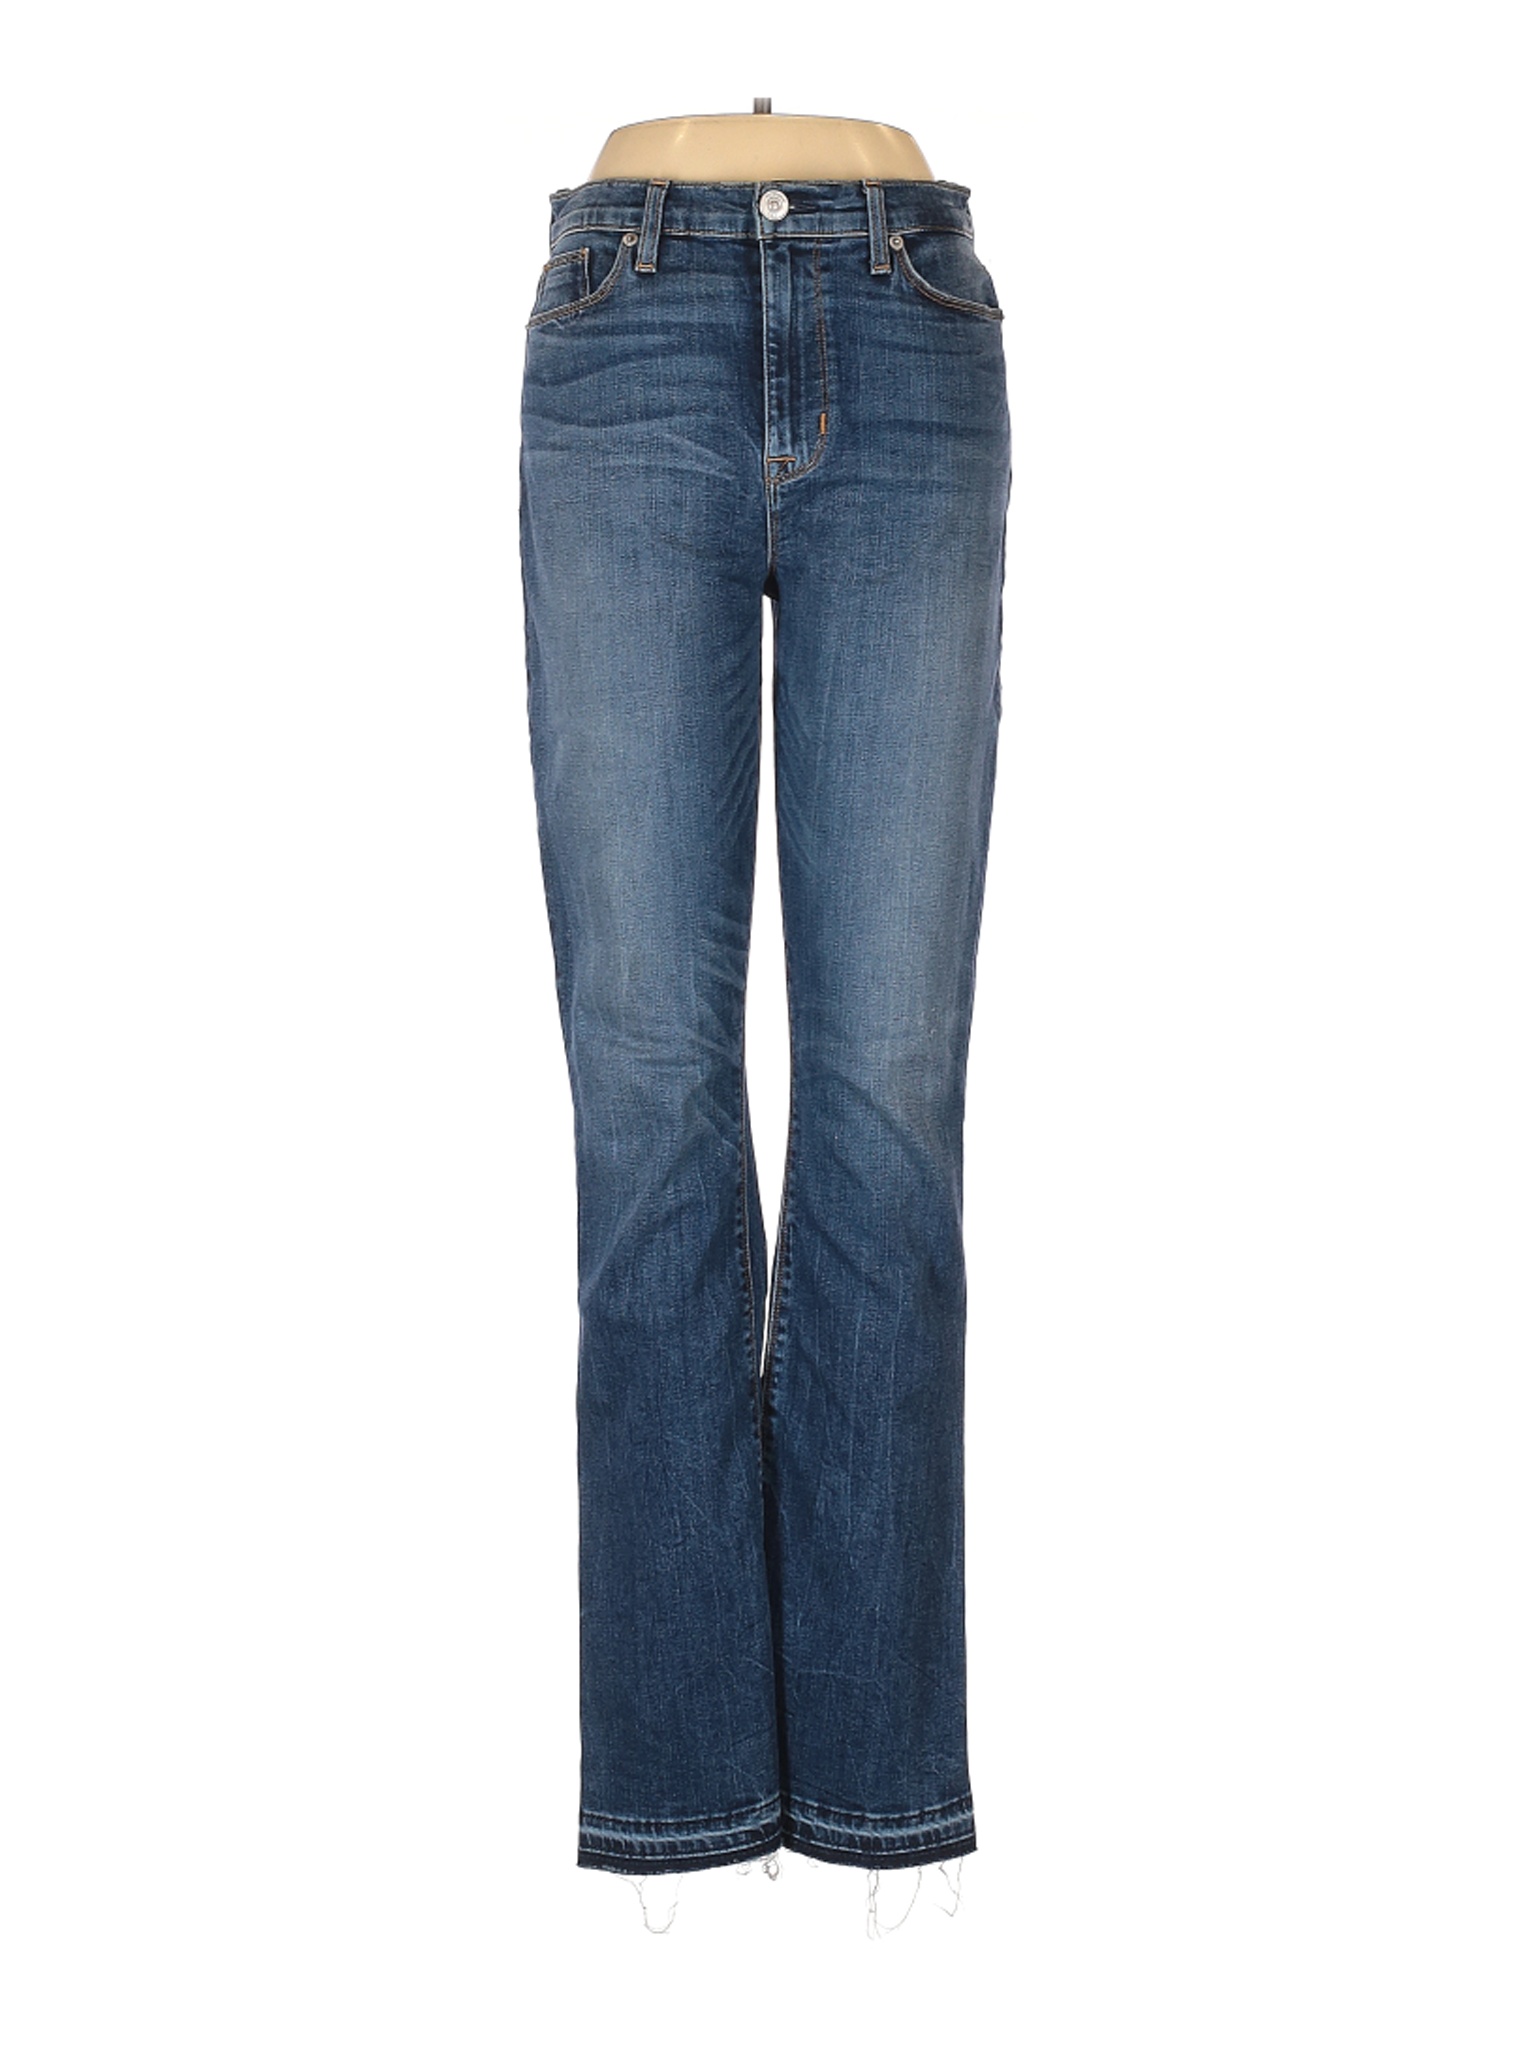 Hudson Jeans Women Blue Jeans 29W | eBay